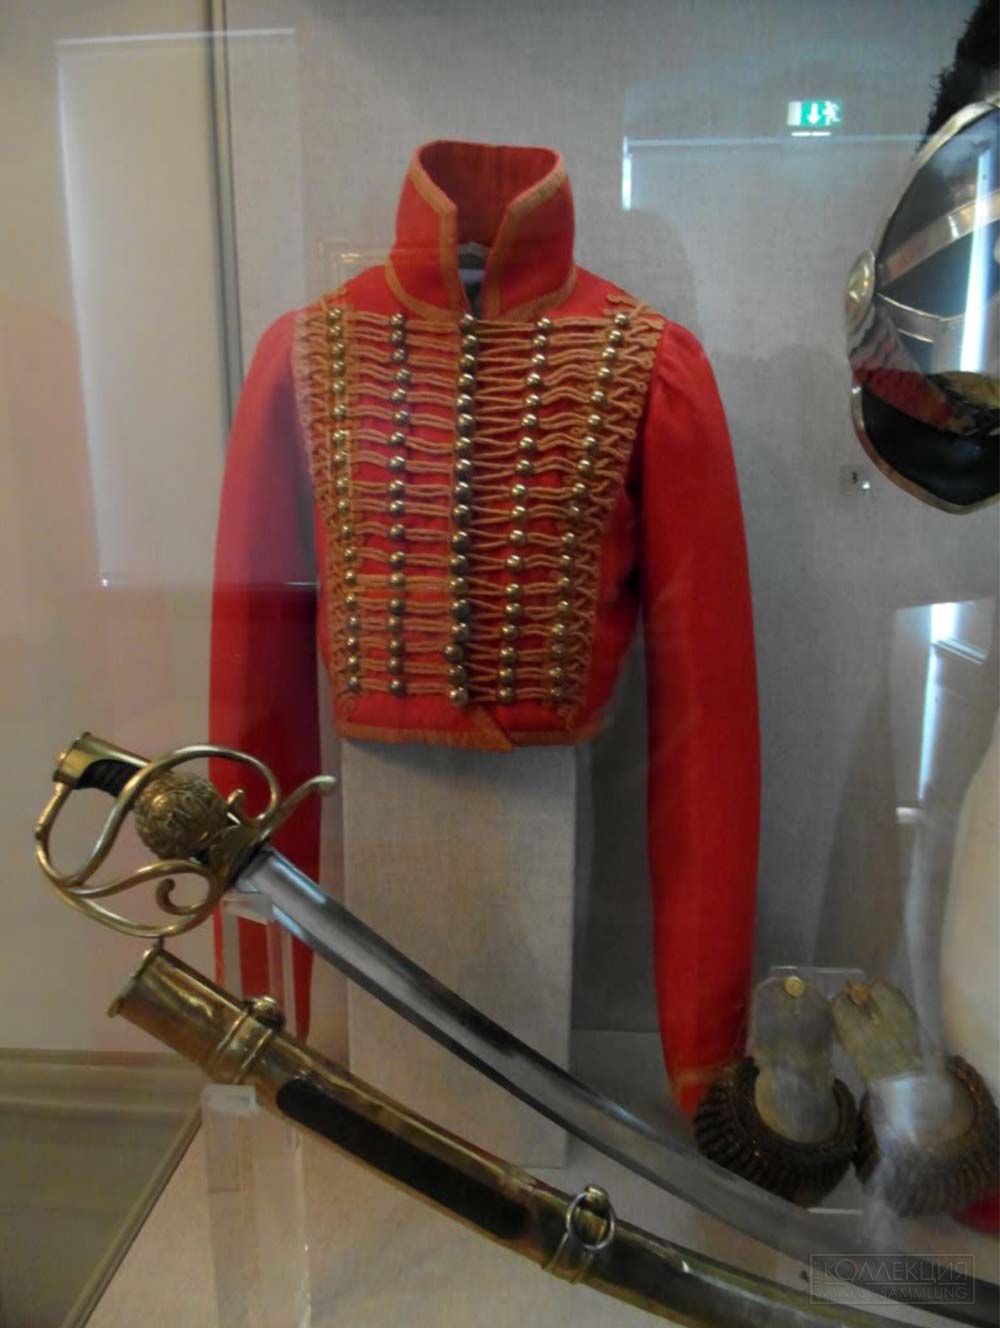 Сабля гвардейских шеволежеров Королевства Вестфалия, принадлежавшая генералу Вольфу. Из коллекции замка Фридрихштайн в Бад-Вильдунгене. Фото из сети интернет 